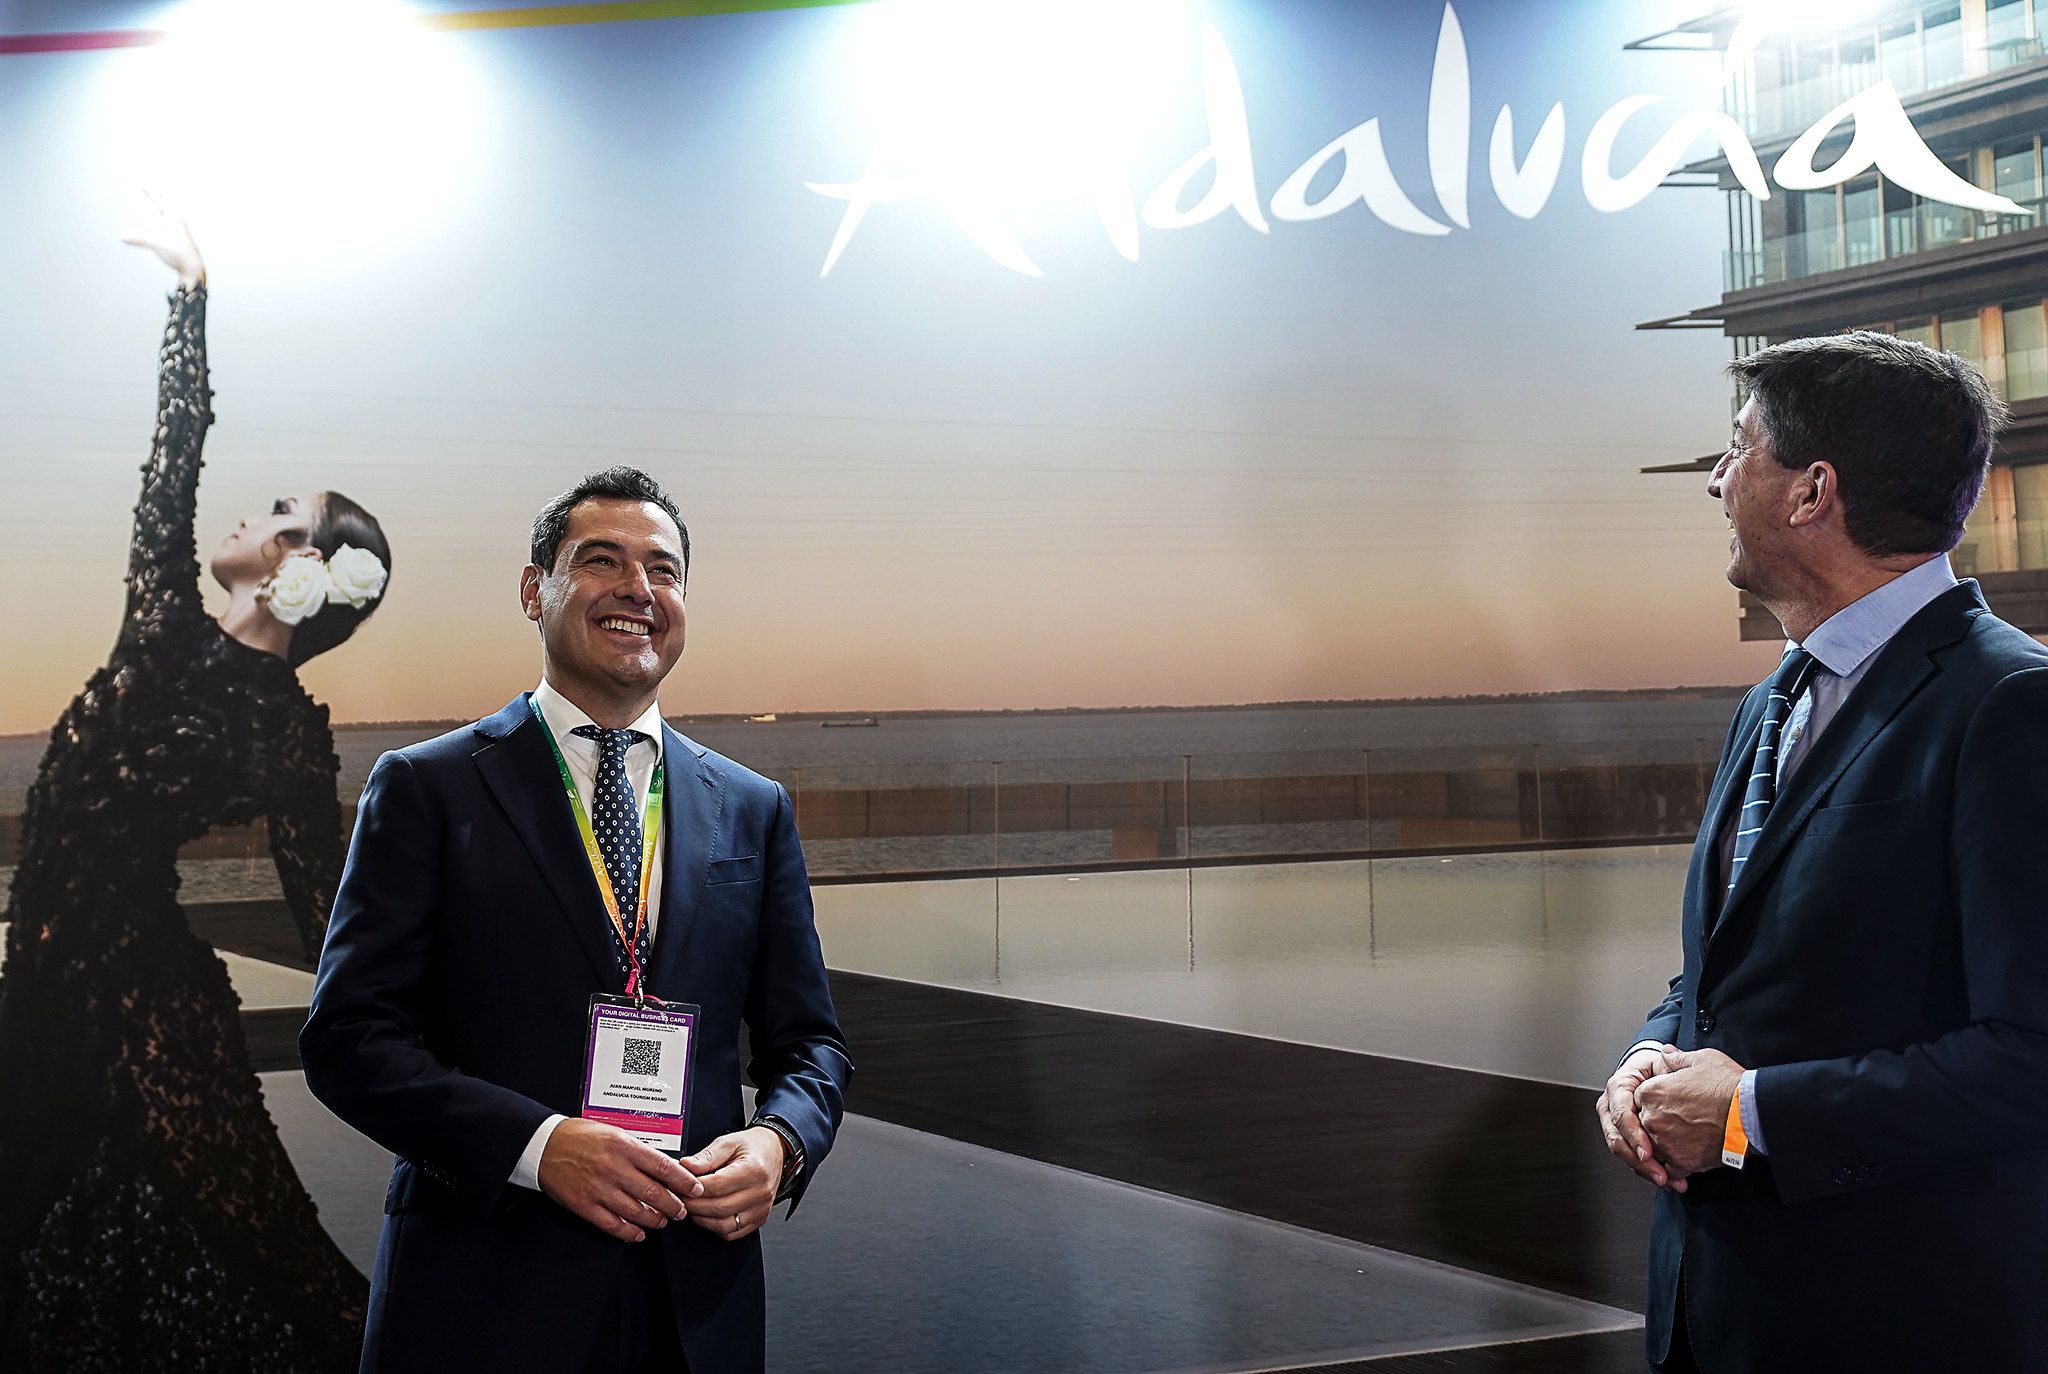 Moreno y Marín, presidente y vicepresidente de la Junta de Andalucía, respectivamente, hace unos días, en la World Travel Market de Londres.